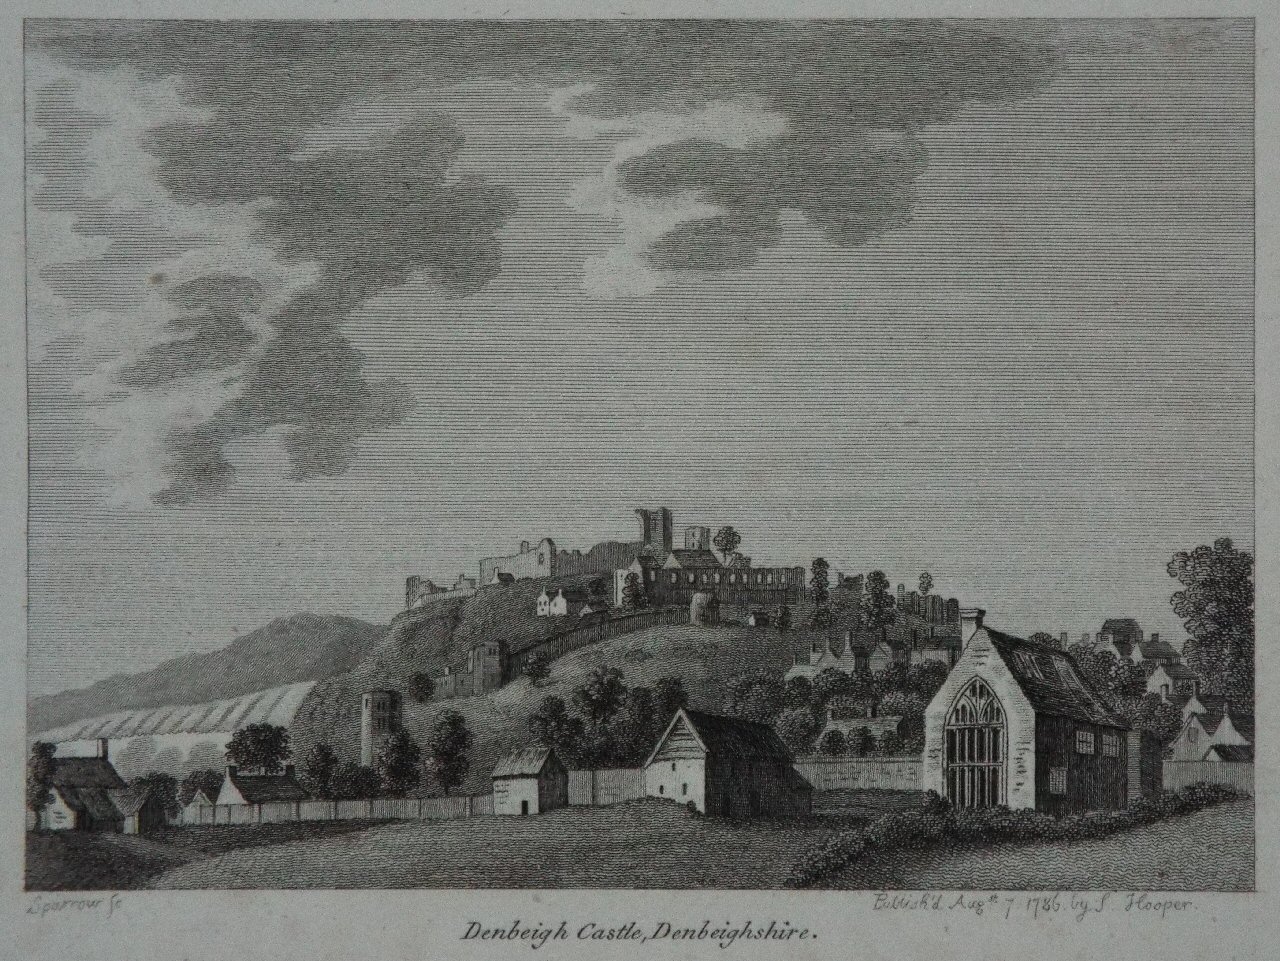 Print - Denbeigh Castle, Denbeighshire. - 